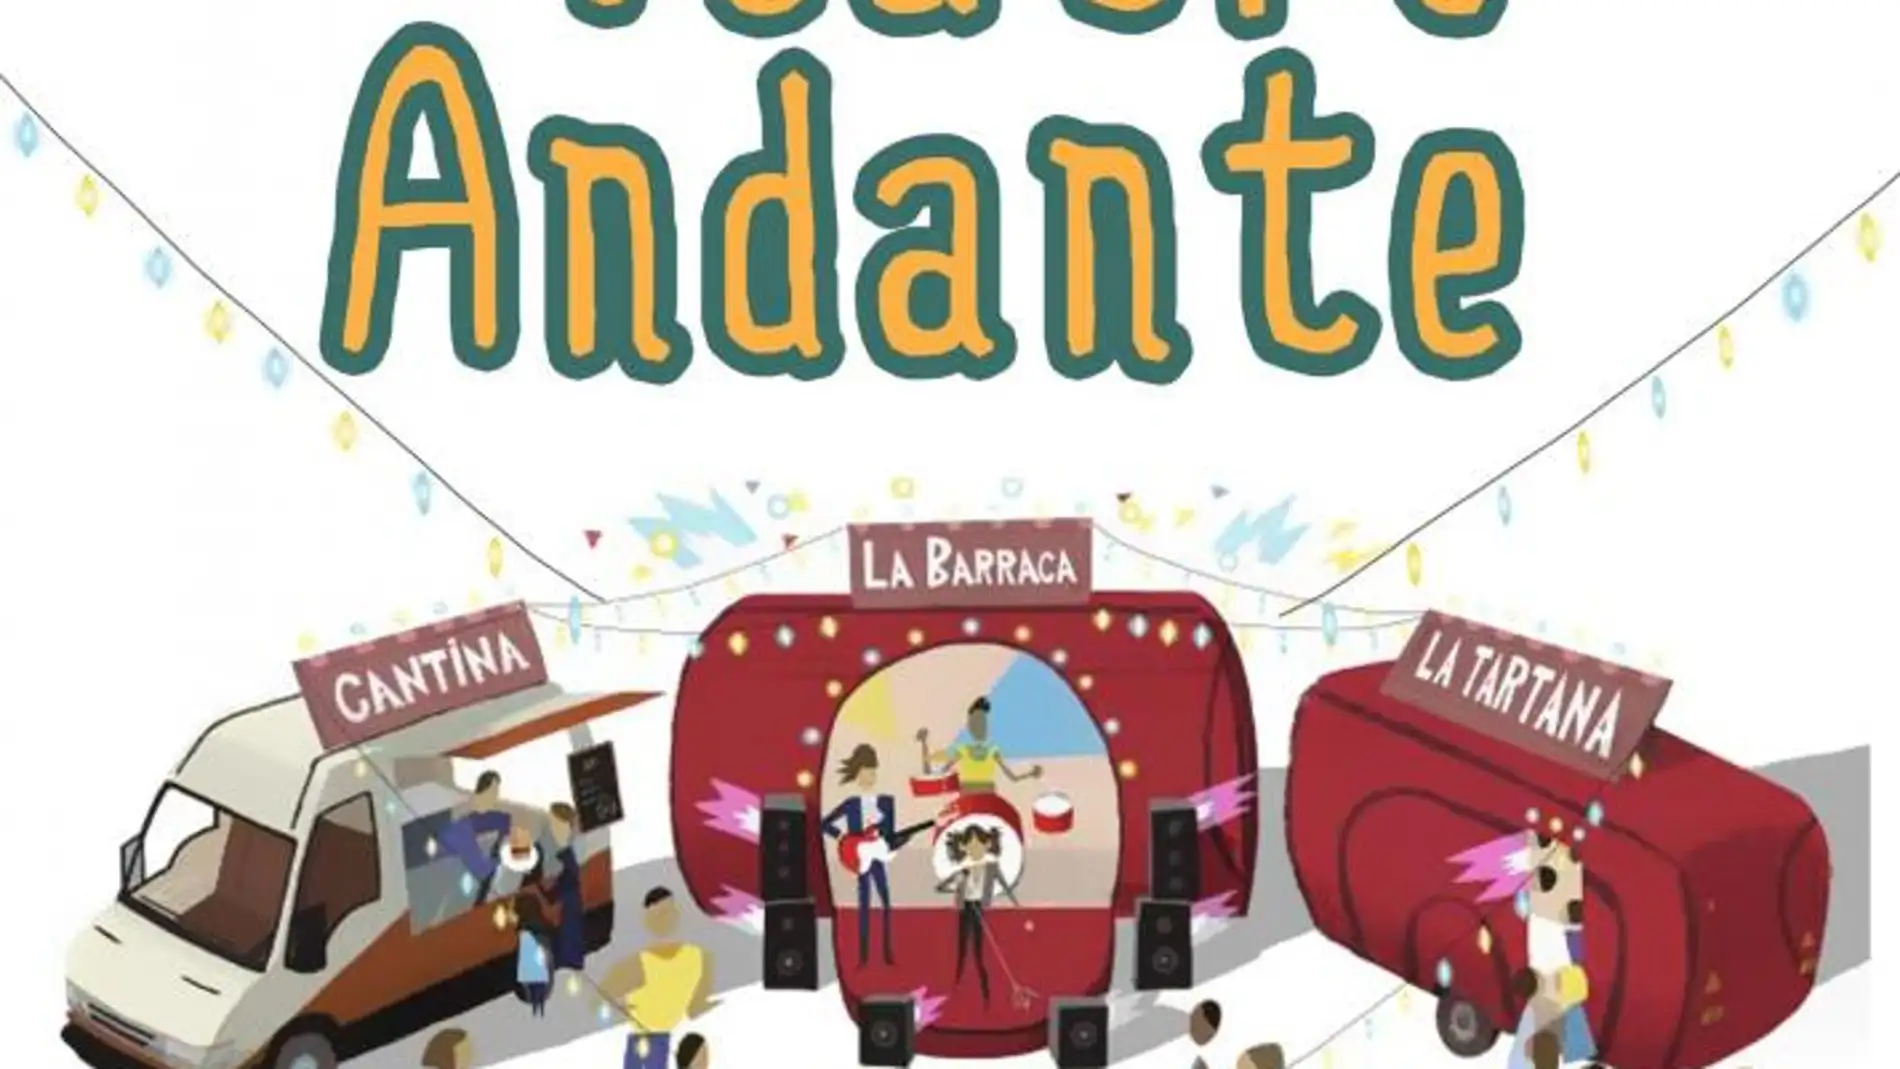 El Teatro Andante ya recorre la provincia de Albacete, ¿te apuntas?